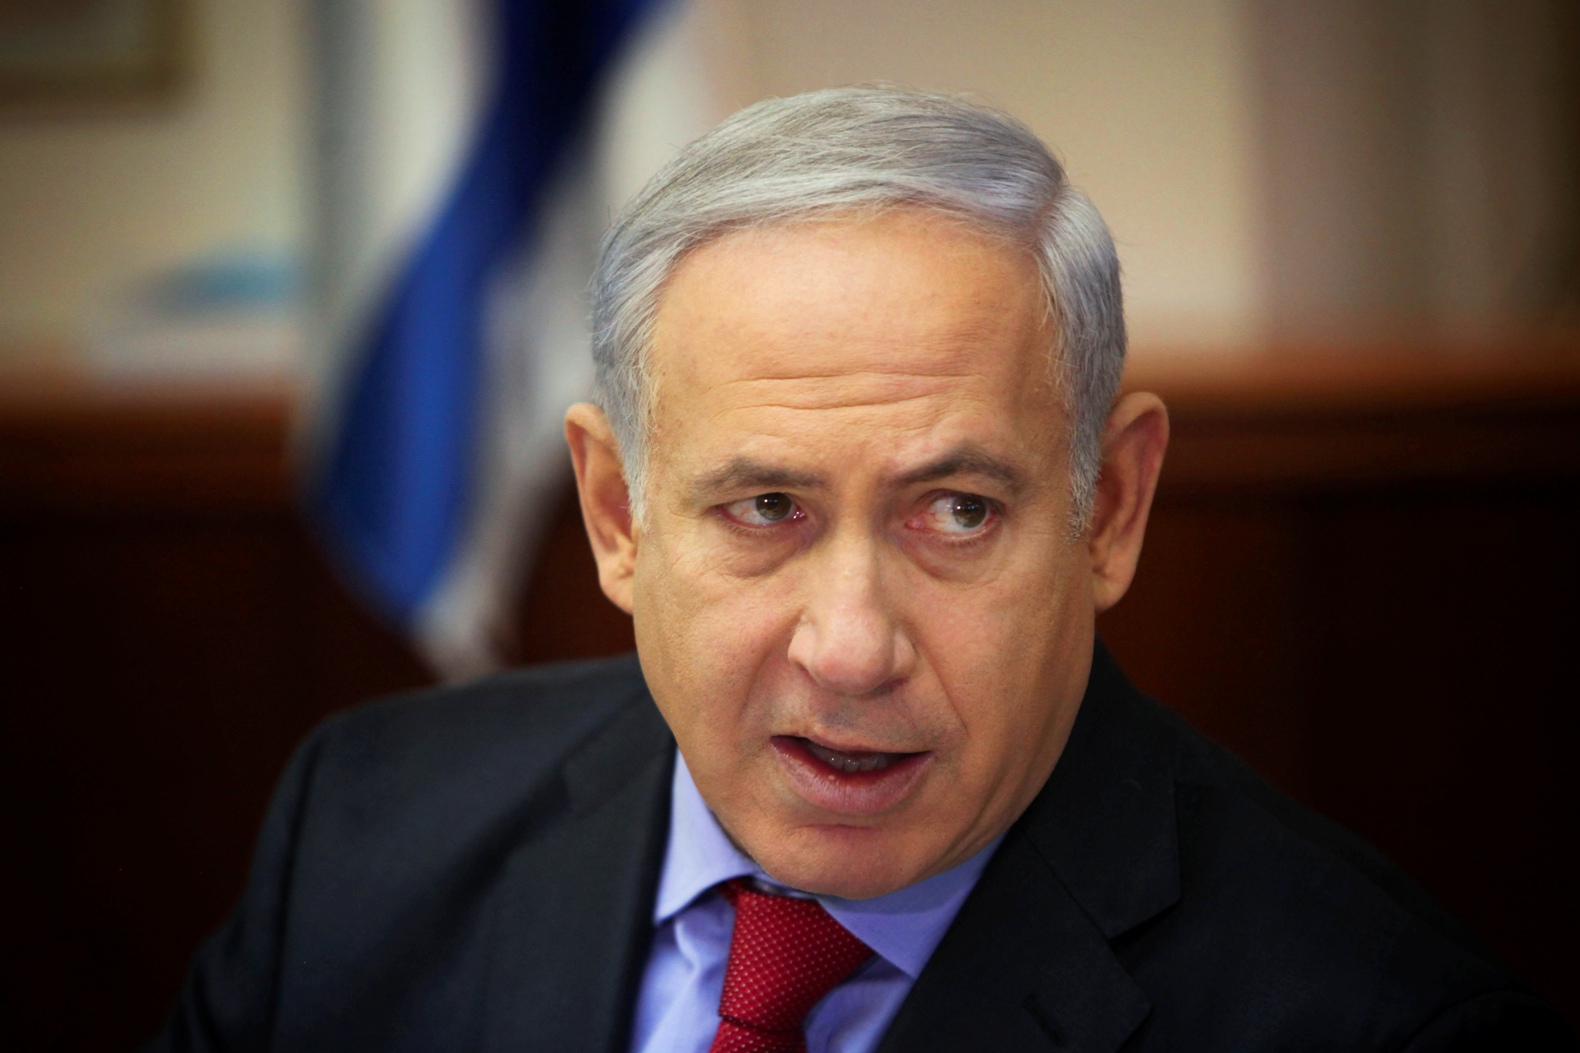  المجلس الوزاري الإسرائيلي المصغر يناقش اليوم الخطة لمكافحة إلقاء الحجارة والزجاجات الحارقة
